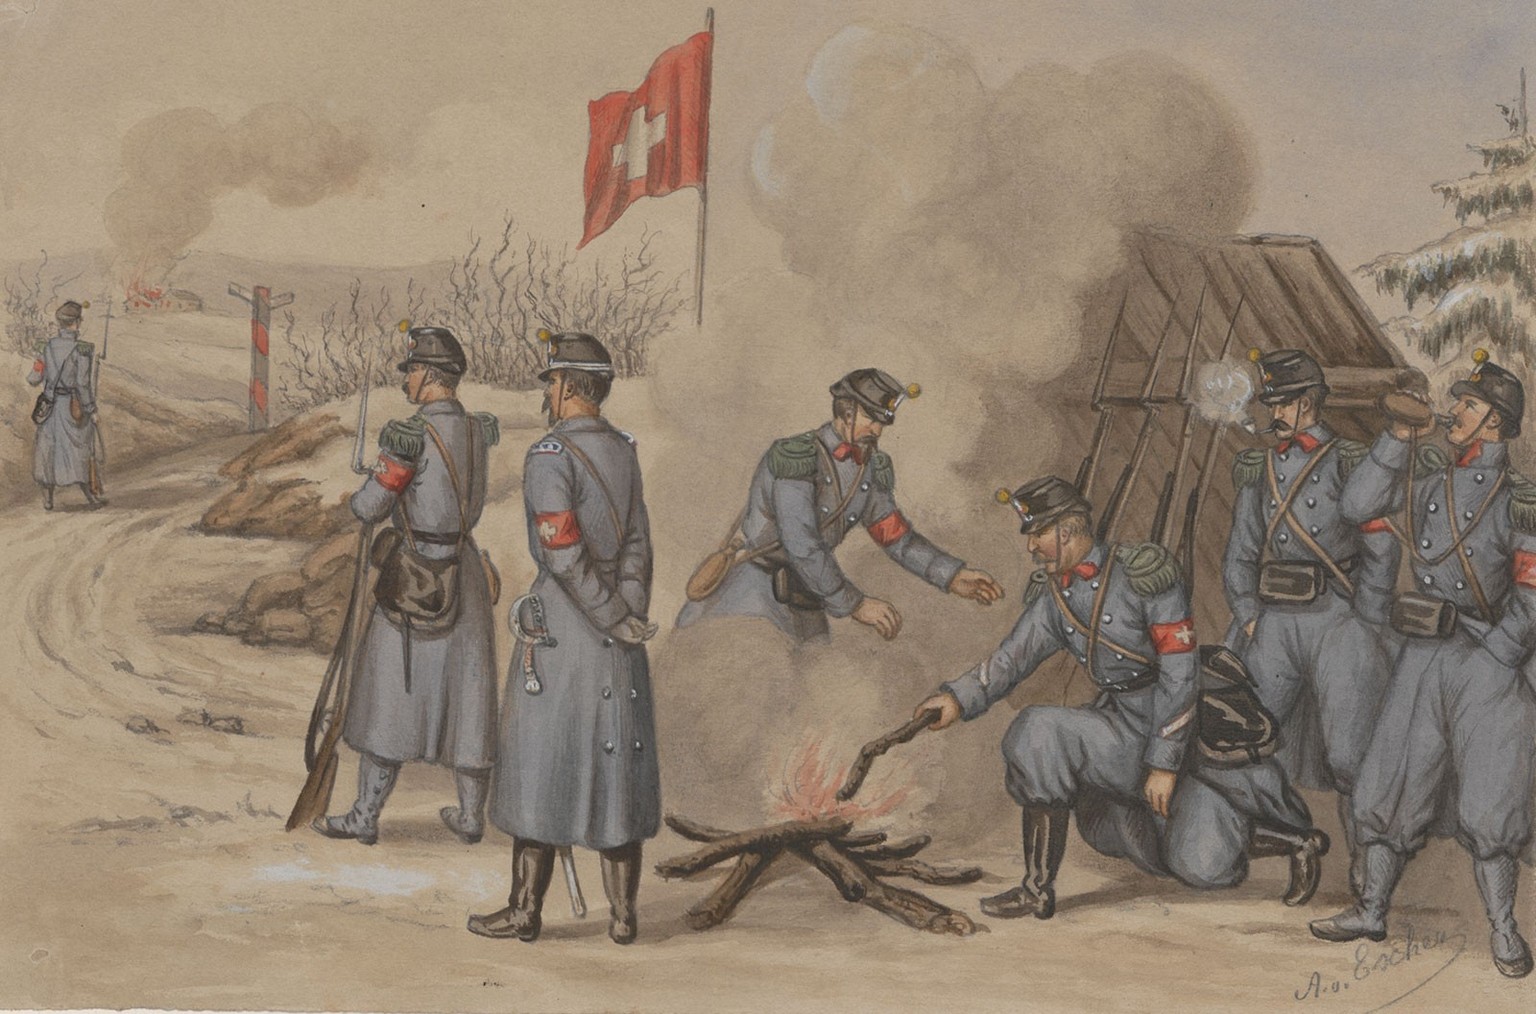 Soldats genevois mobilisés à la frontière en 1871.
https://www.historic.admin.ch/media/image/e887312d-f979-4352-9cad-439bded5e1eb